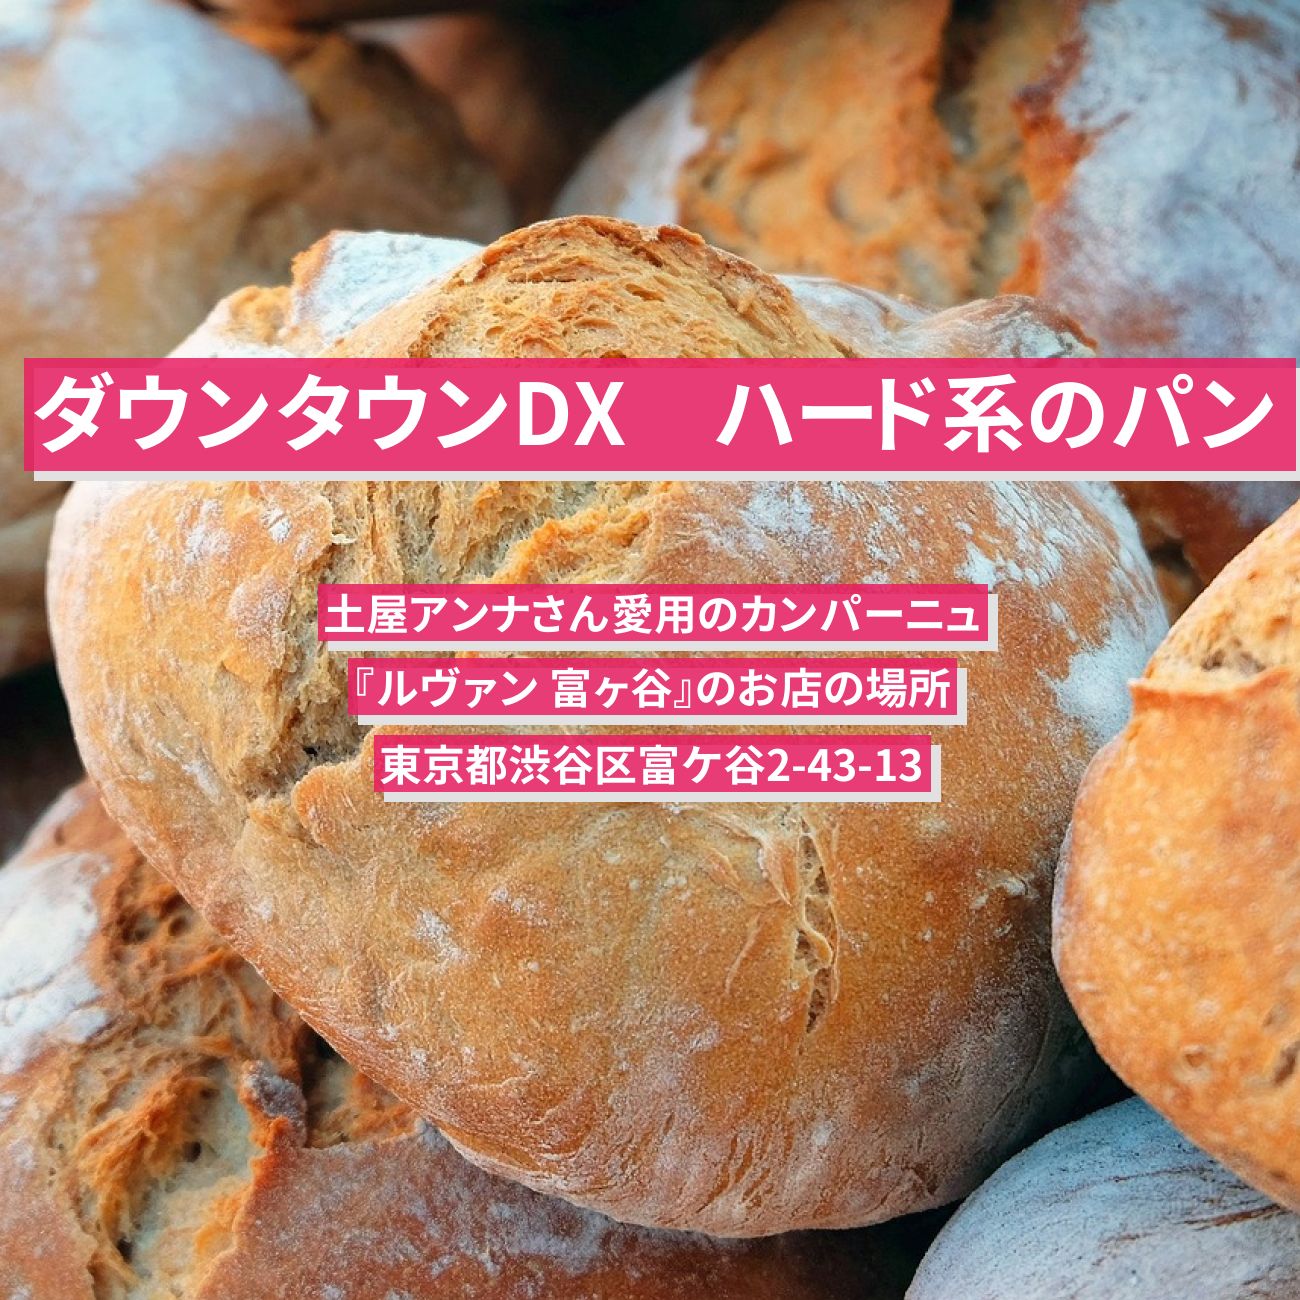 【ダウンタウンDX】ハード系の硬いパン（カンパーニュ）土屋アンナ『ルヴァン 富ヶ谷』のお店の場所